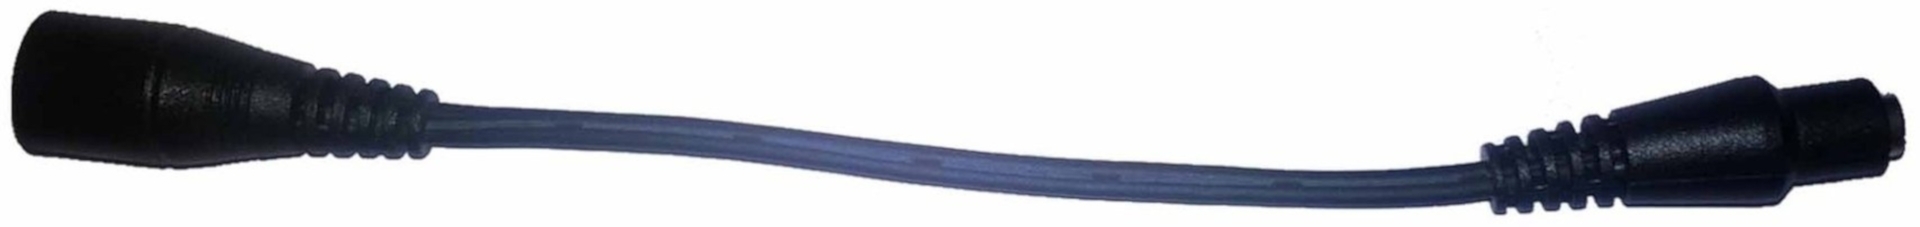 Klan-e Charger Cable Câble chargeur Noir unique taille